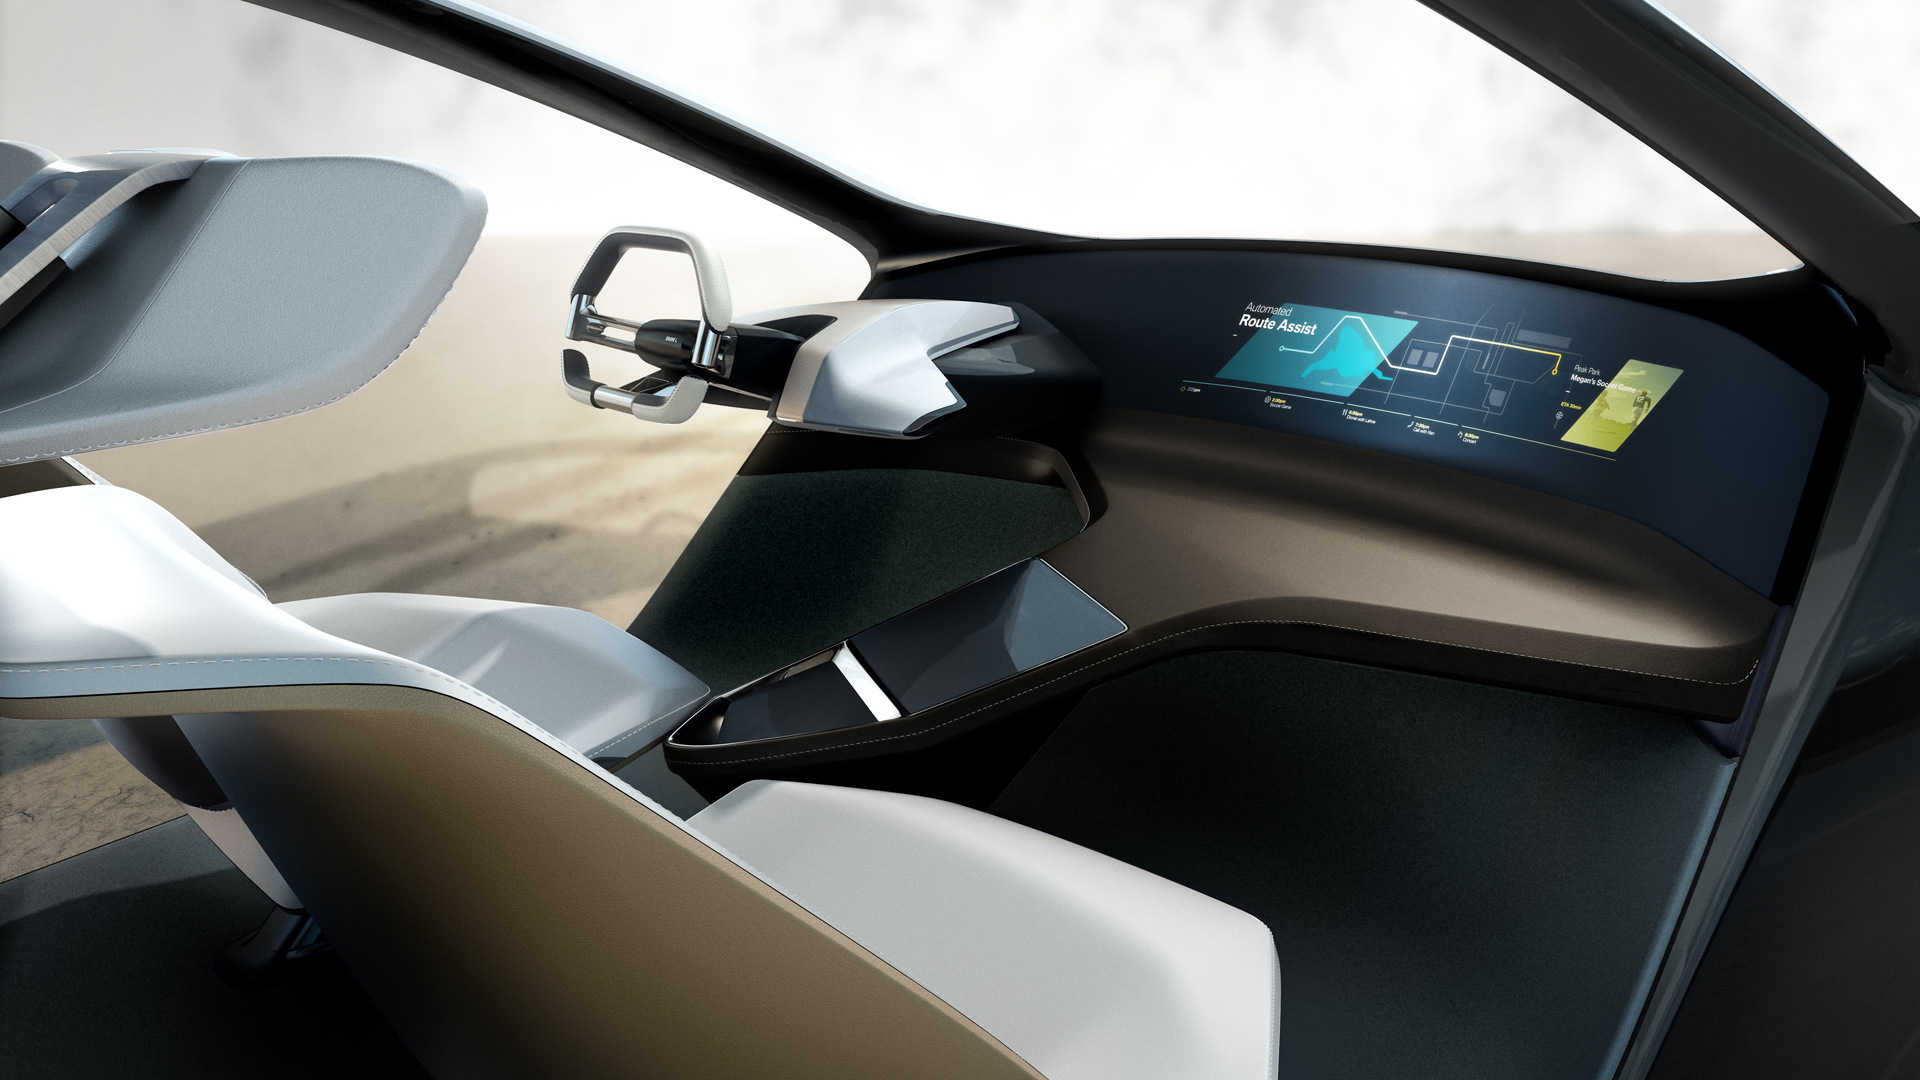 BMW i Inside Future concept, 2017 Consumer Electronics Show